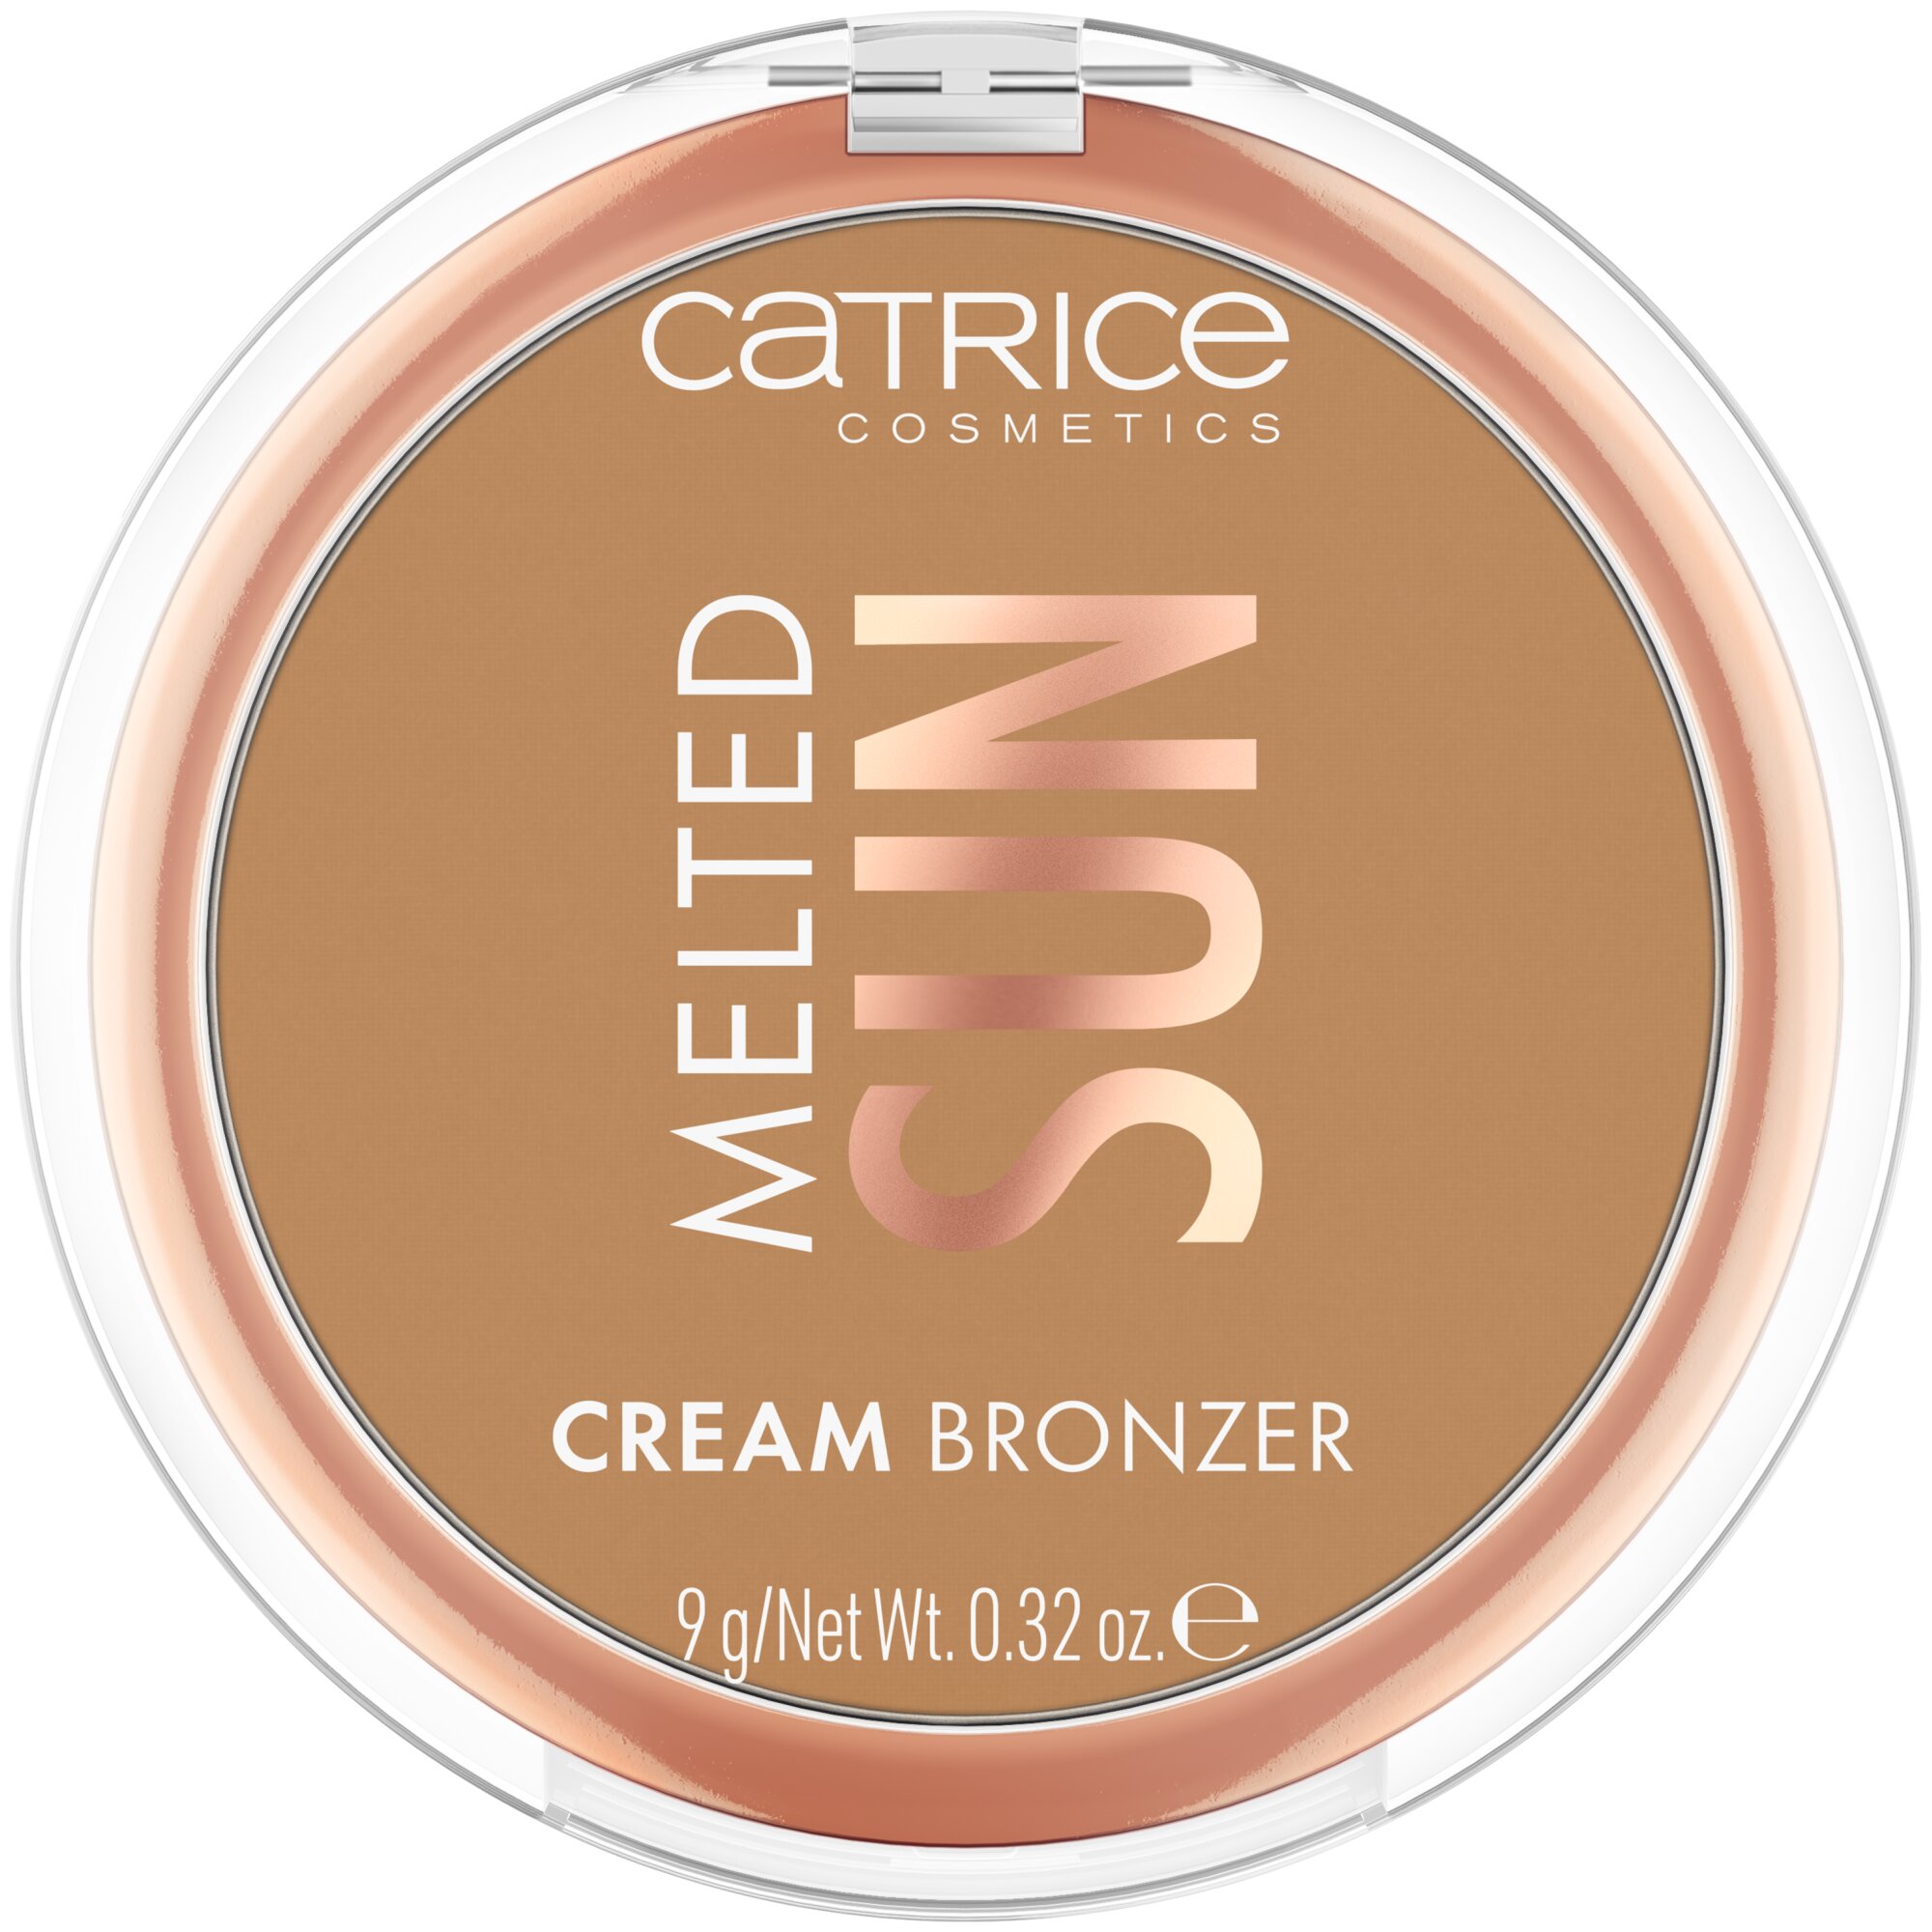 Bronzer cremos pentru fata Melted Sun, 020 - Beach Babe, 9 g, Catrice